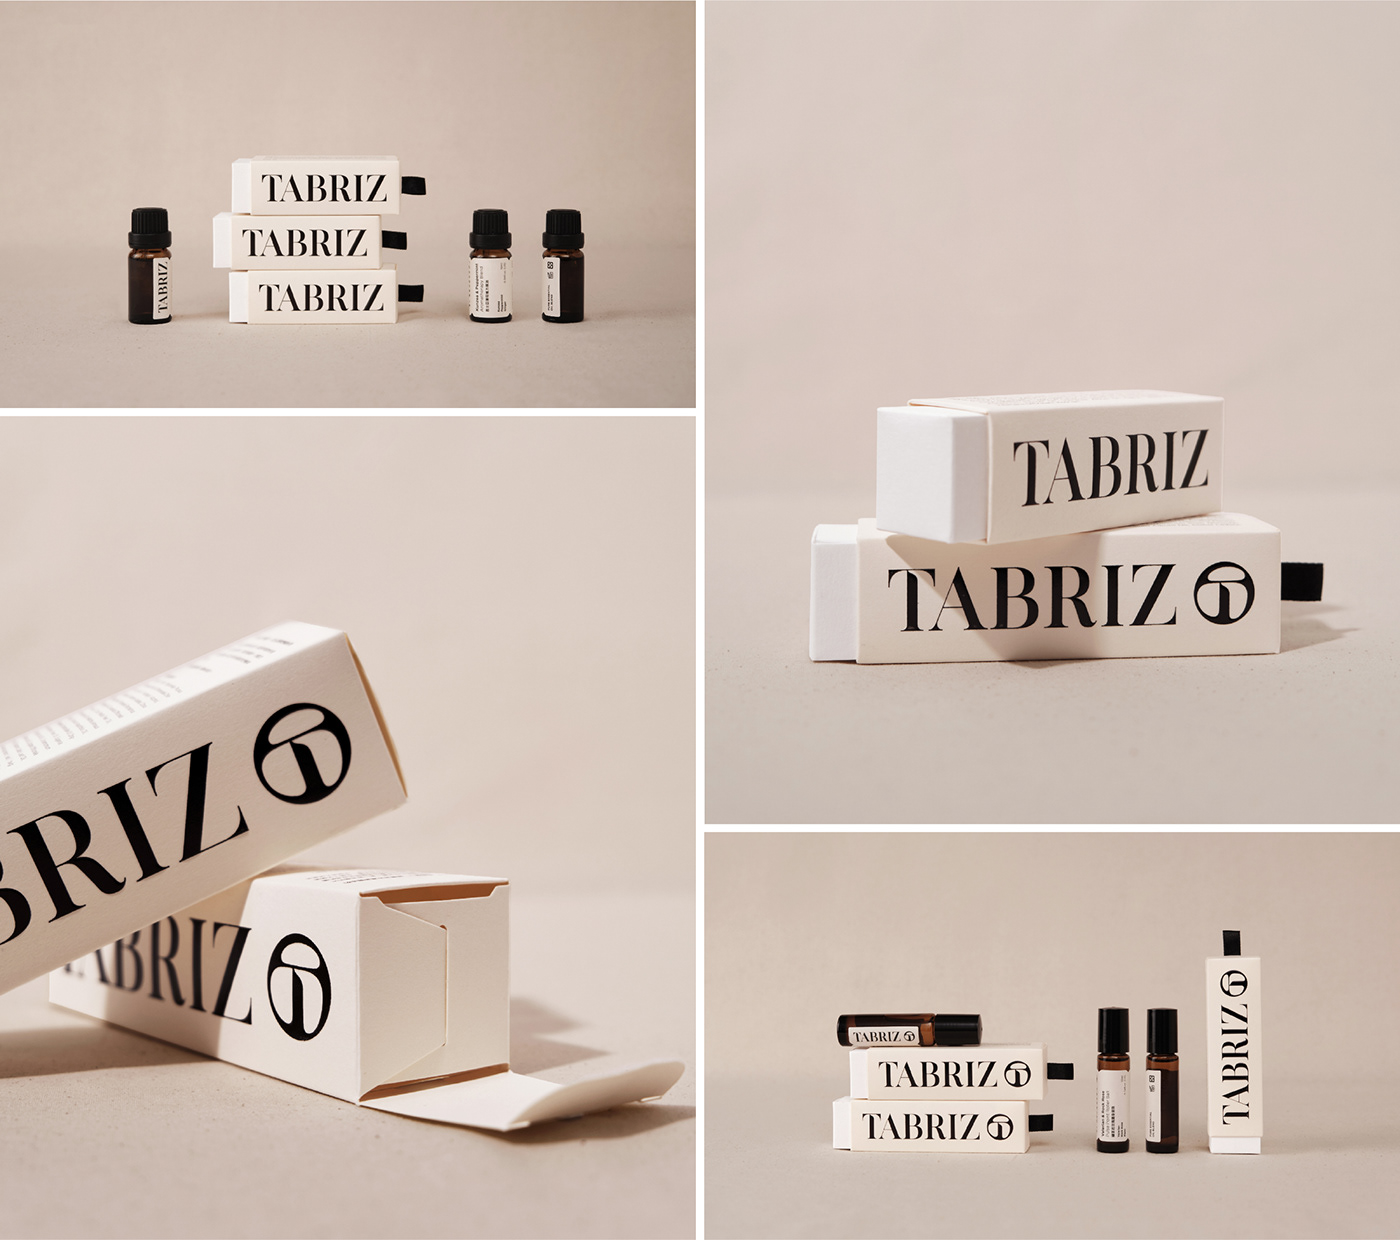 Aromatherapy essential oils identity logo nomocreative Packaging taipei taiwan visual identity 不毛